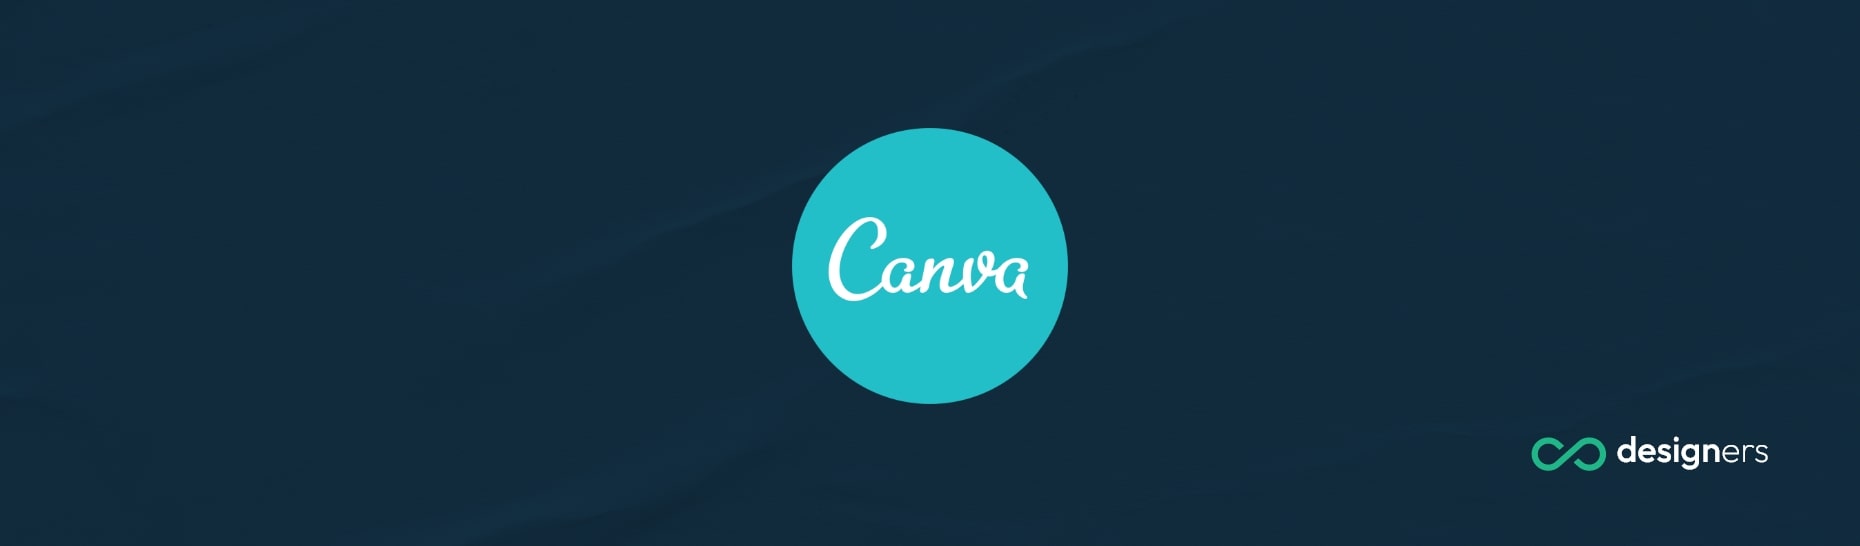 How Do I Save Canva as EPS?